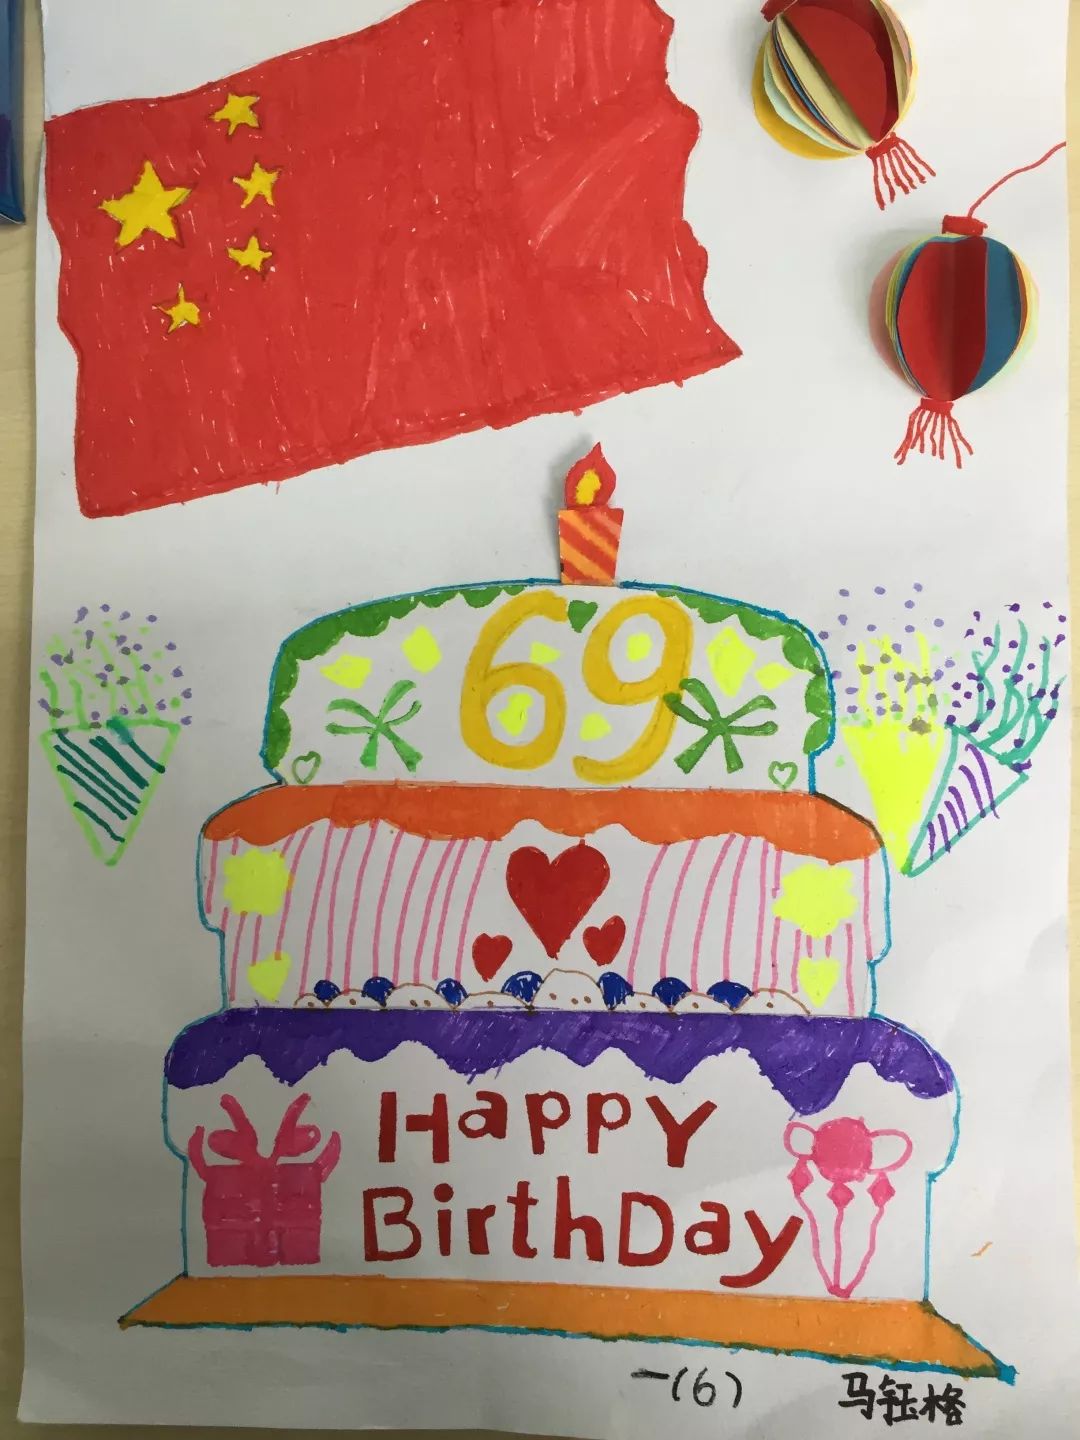 你画一面红旗,我画一个蜡烛,你画一个蛋糕,我画一座北京天安门